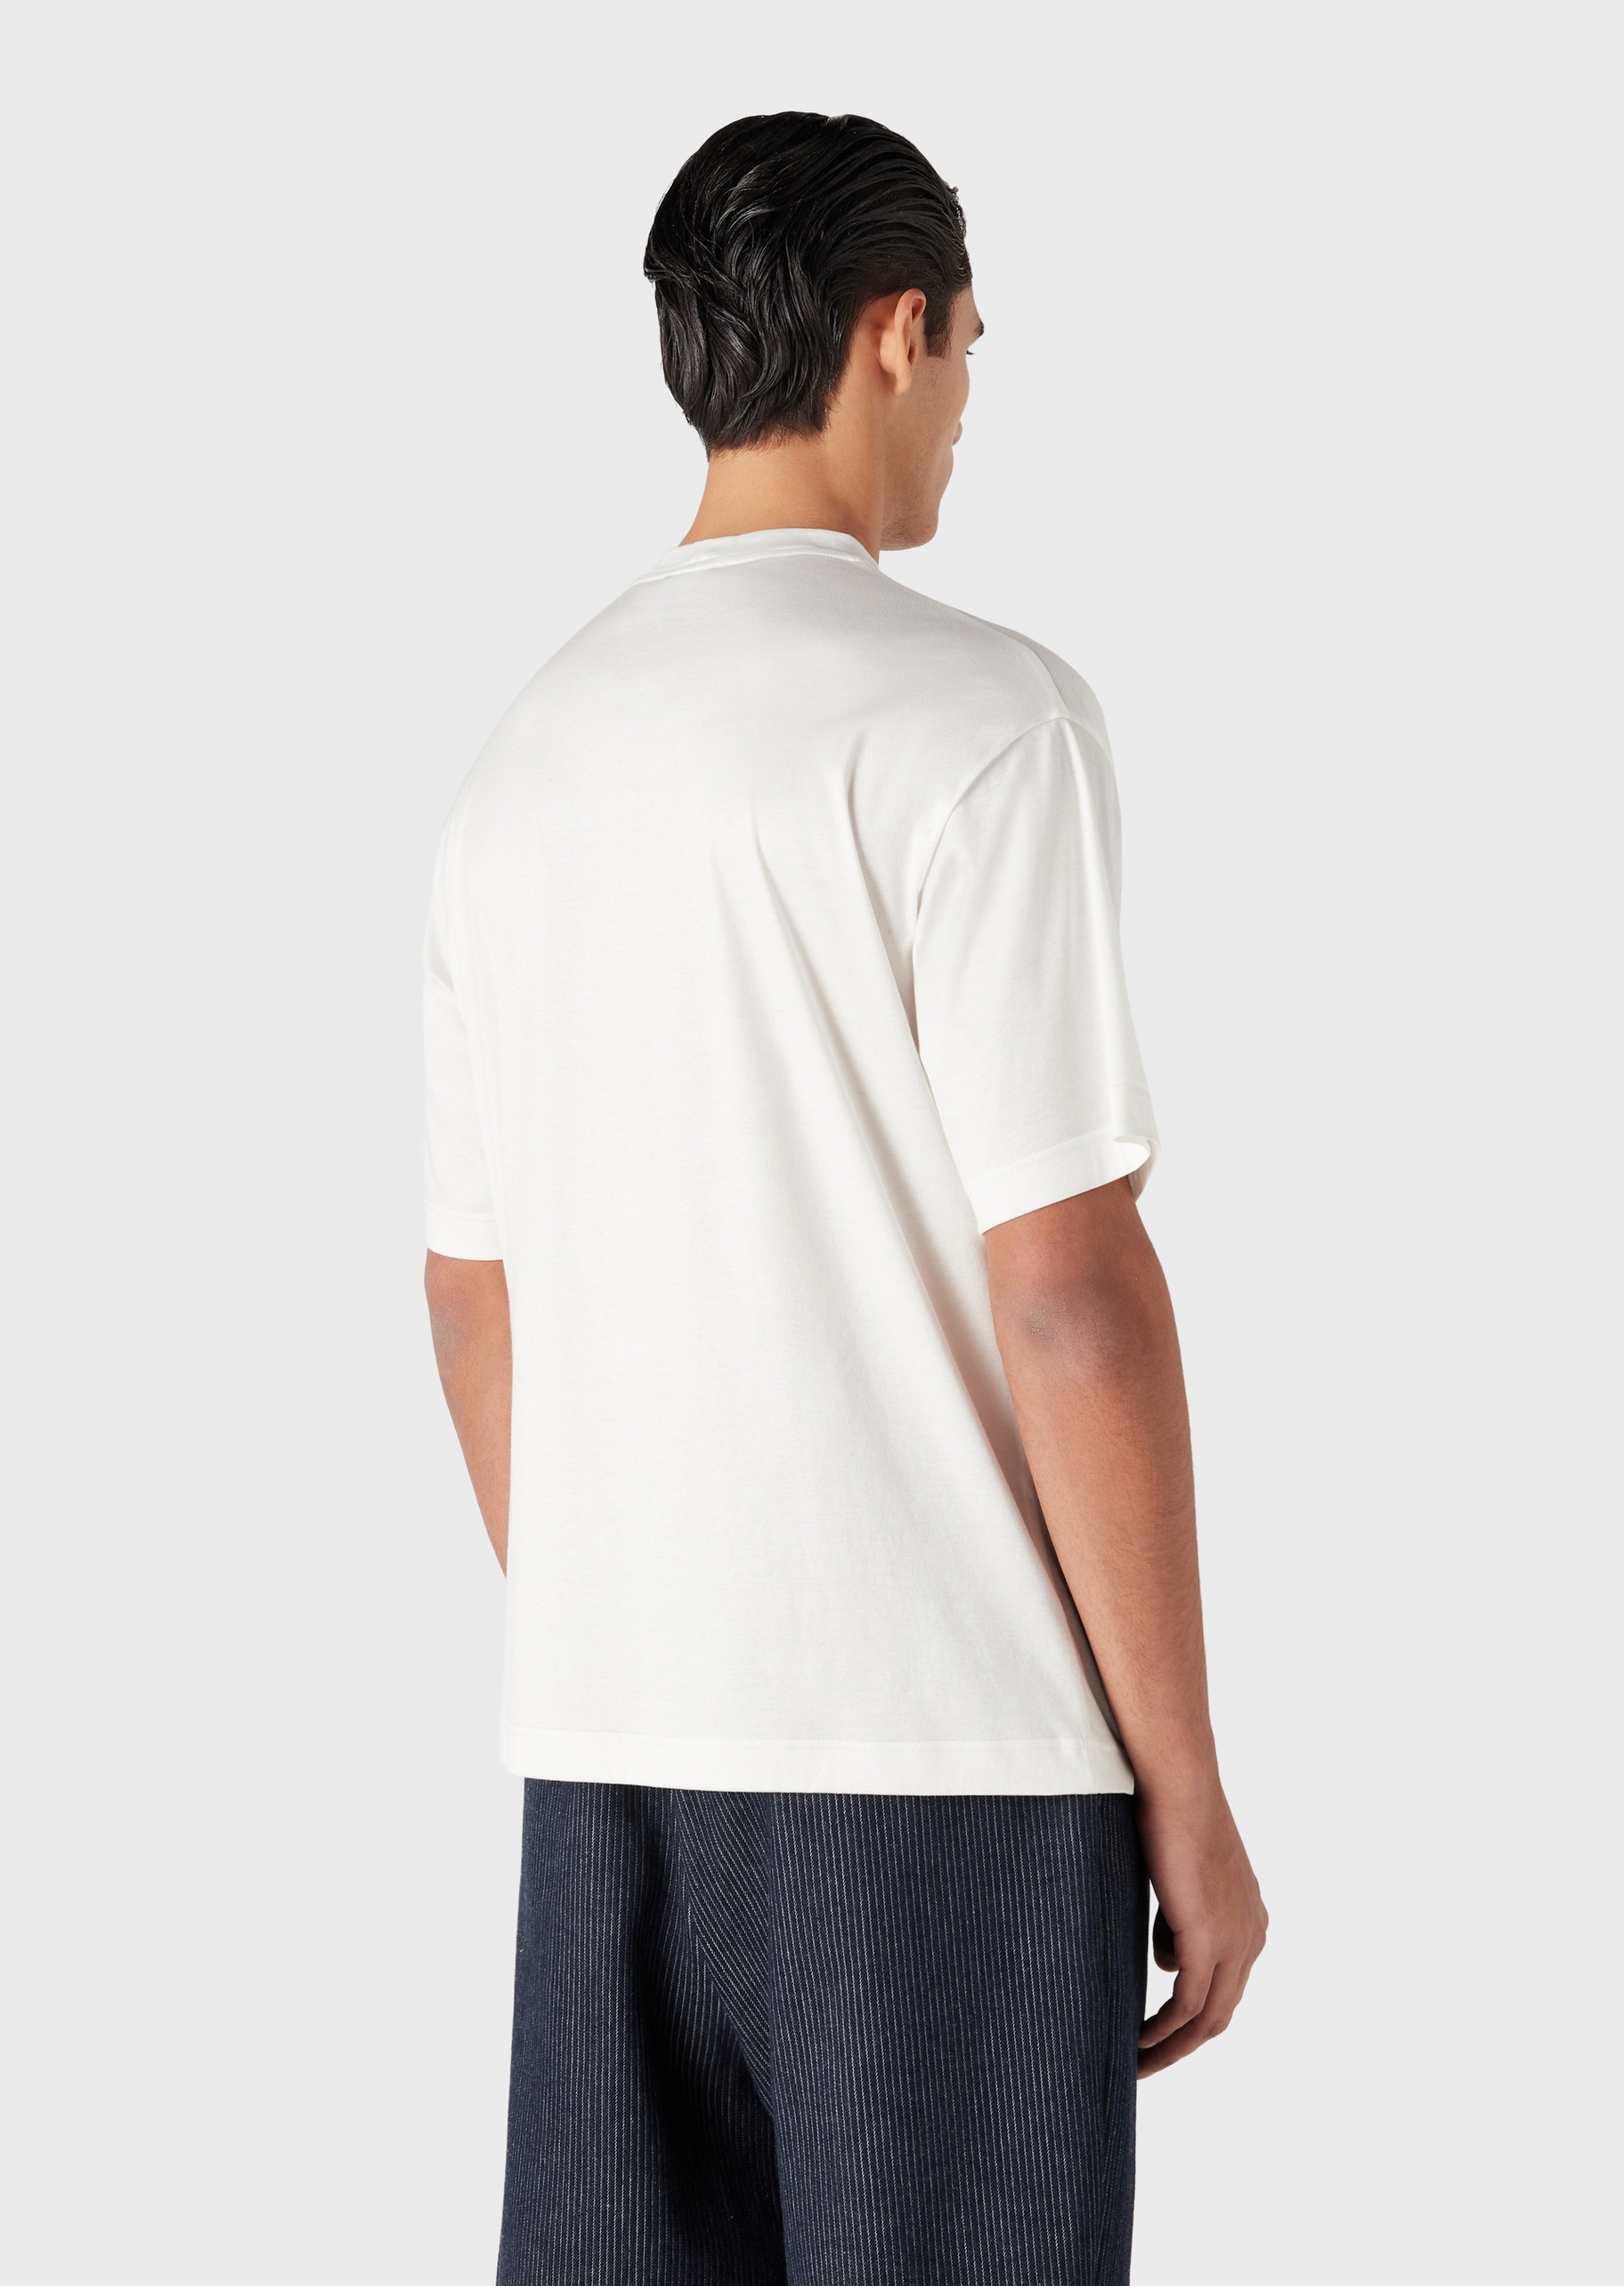 Giorgio Armani 男士潮流落肩刺绣全棉宽松圆领短袖T恤